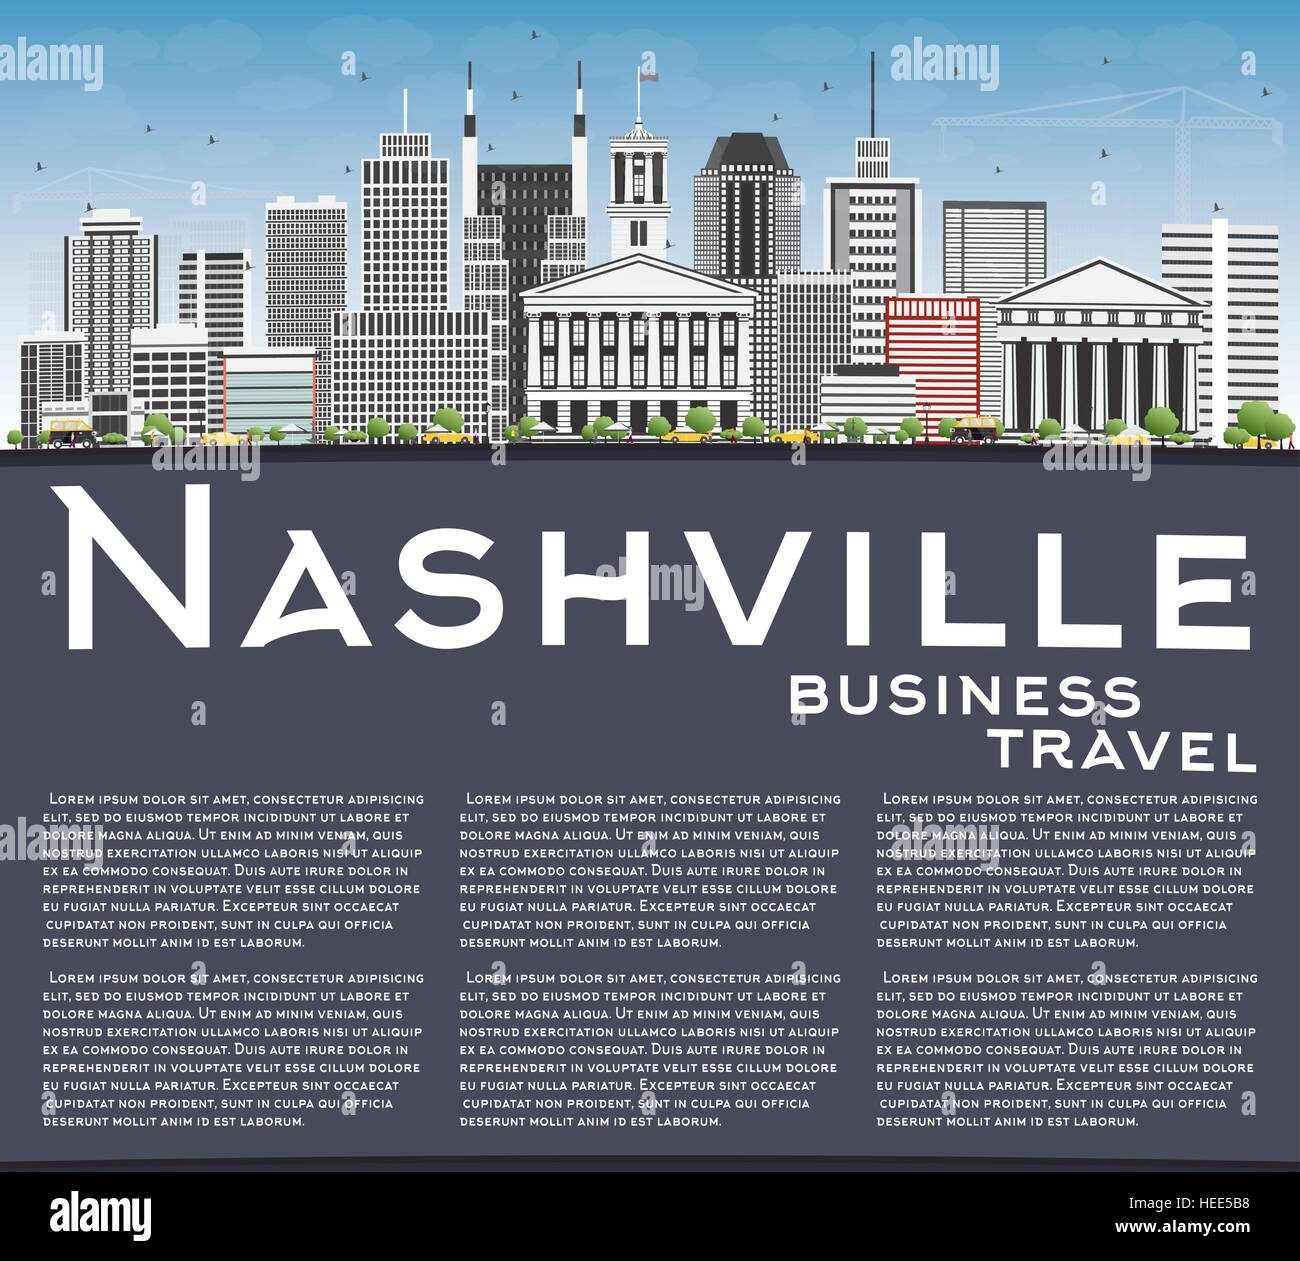 Nashville Skyline mit grauen Gebäuden, blauer Himmel und Textfreiraum. Vektor-Illustration. Geschäftsreisen und Tourismus-Konzept mit moderner Architektur. Stock Vektor